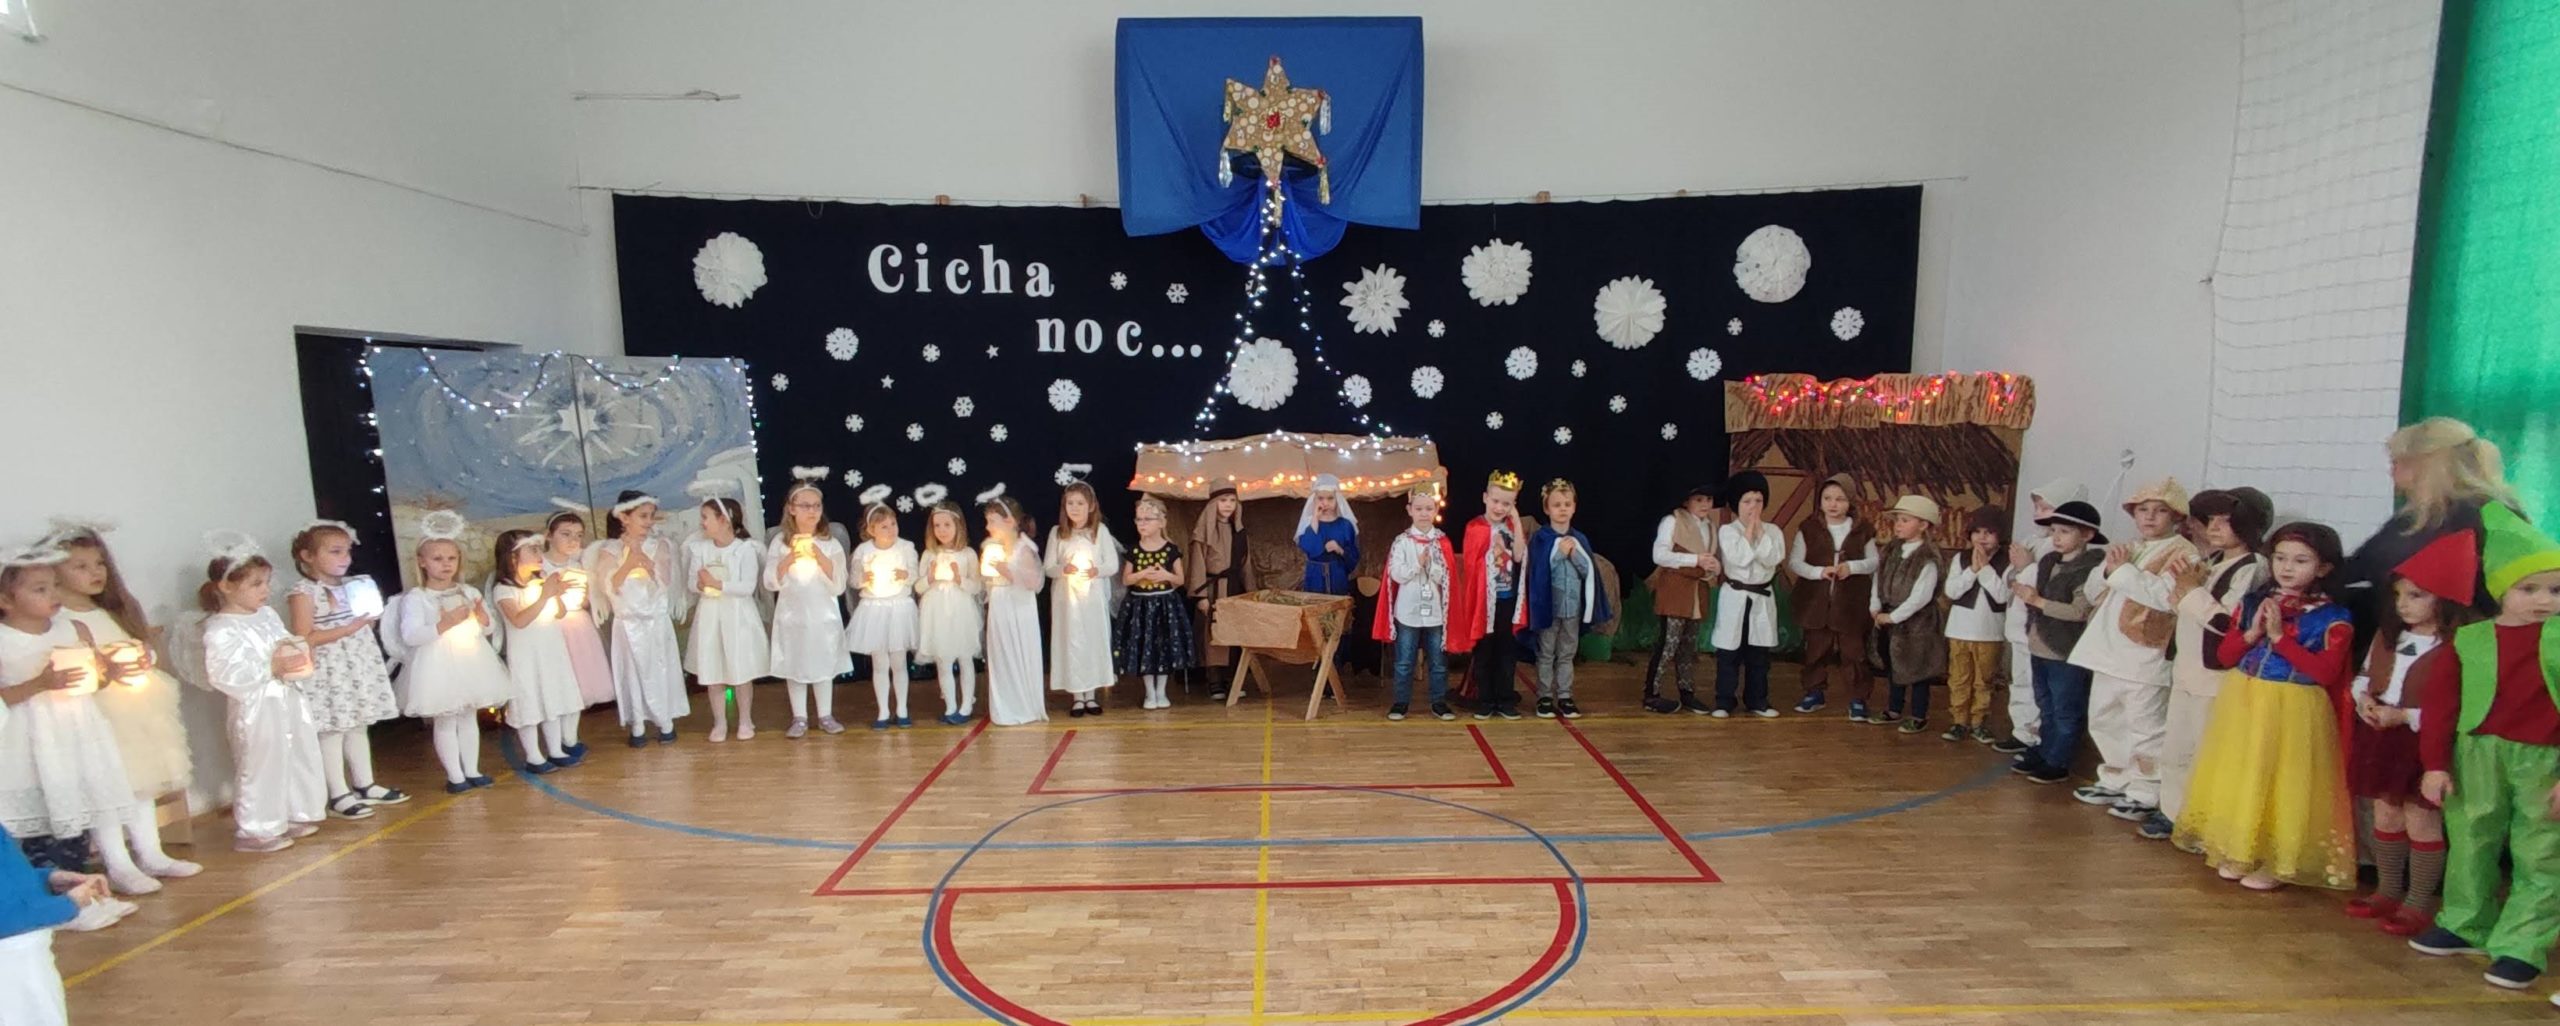 W sali gimnastycznej na tle dekoracji świątecznej z napisem „Cicha noc...”, stoją uczniowie klas 0A i 0B. Ubrani w stroje pastuszka, aniołka, postaci z bajek.